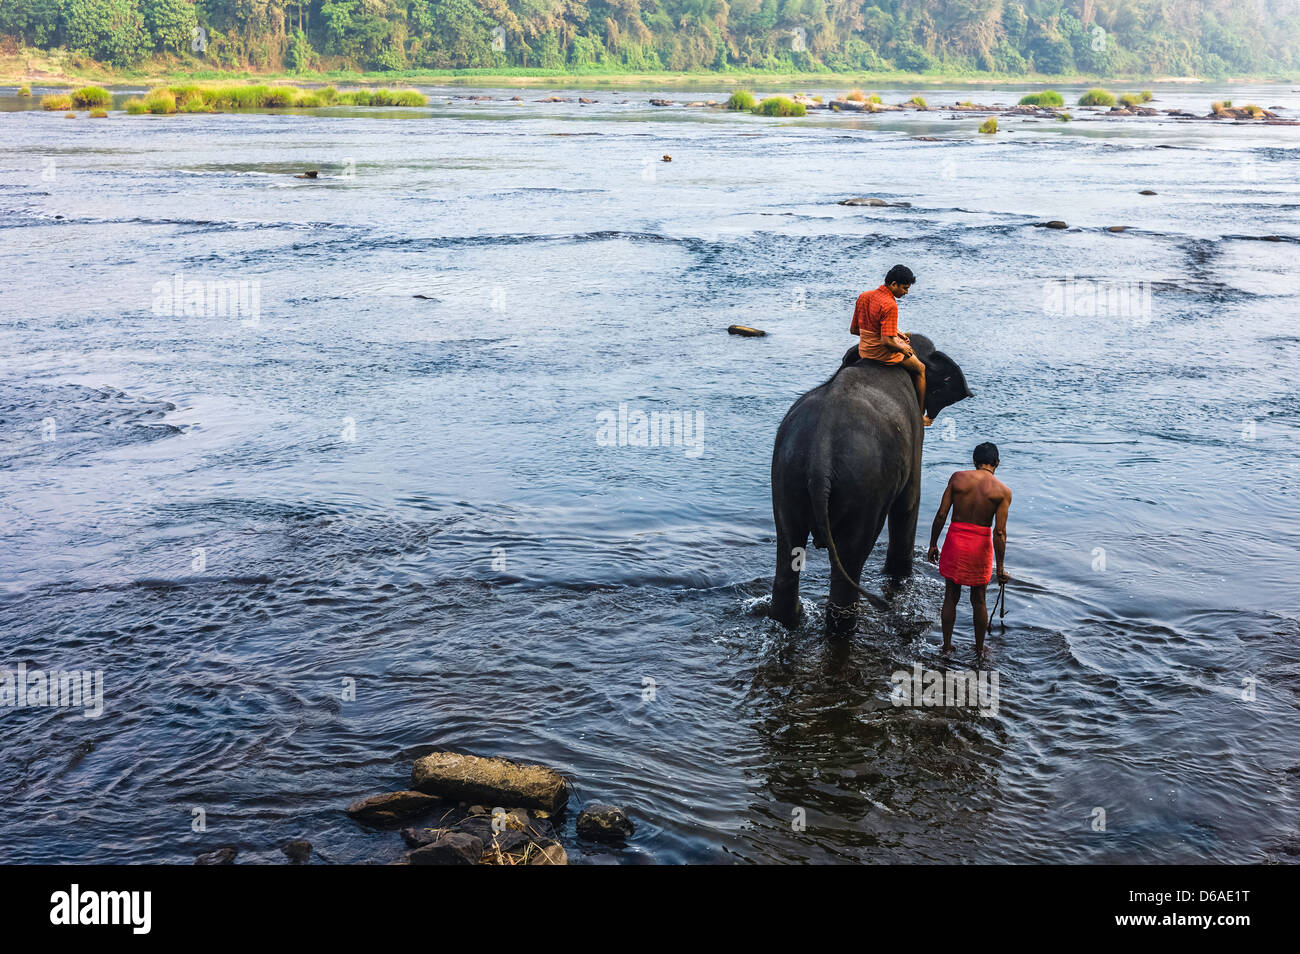 Mahouts, accompagnatori e formatori, lavare i loro elefanti nel fiume del Periyar a poche miglia da Ernakulum, Kerala, India. Foto Stock